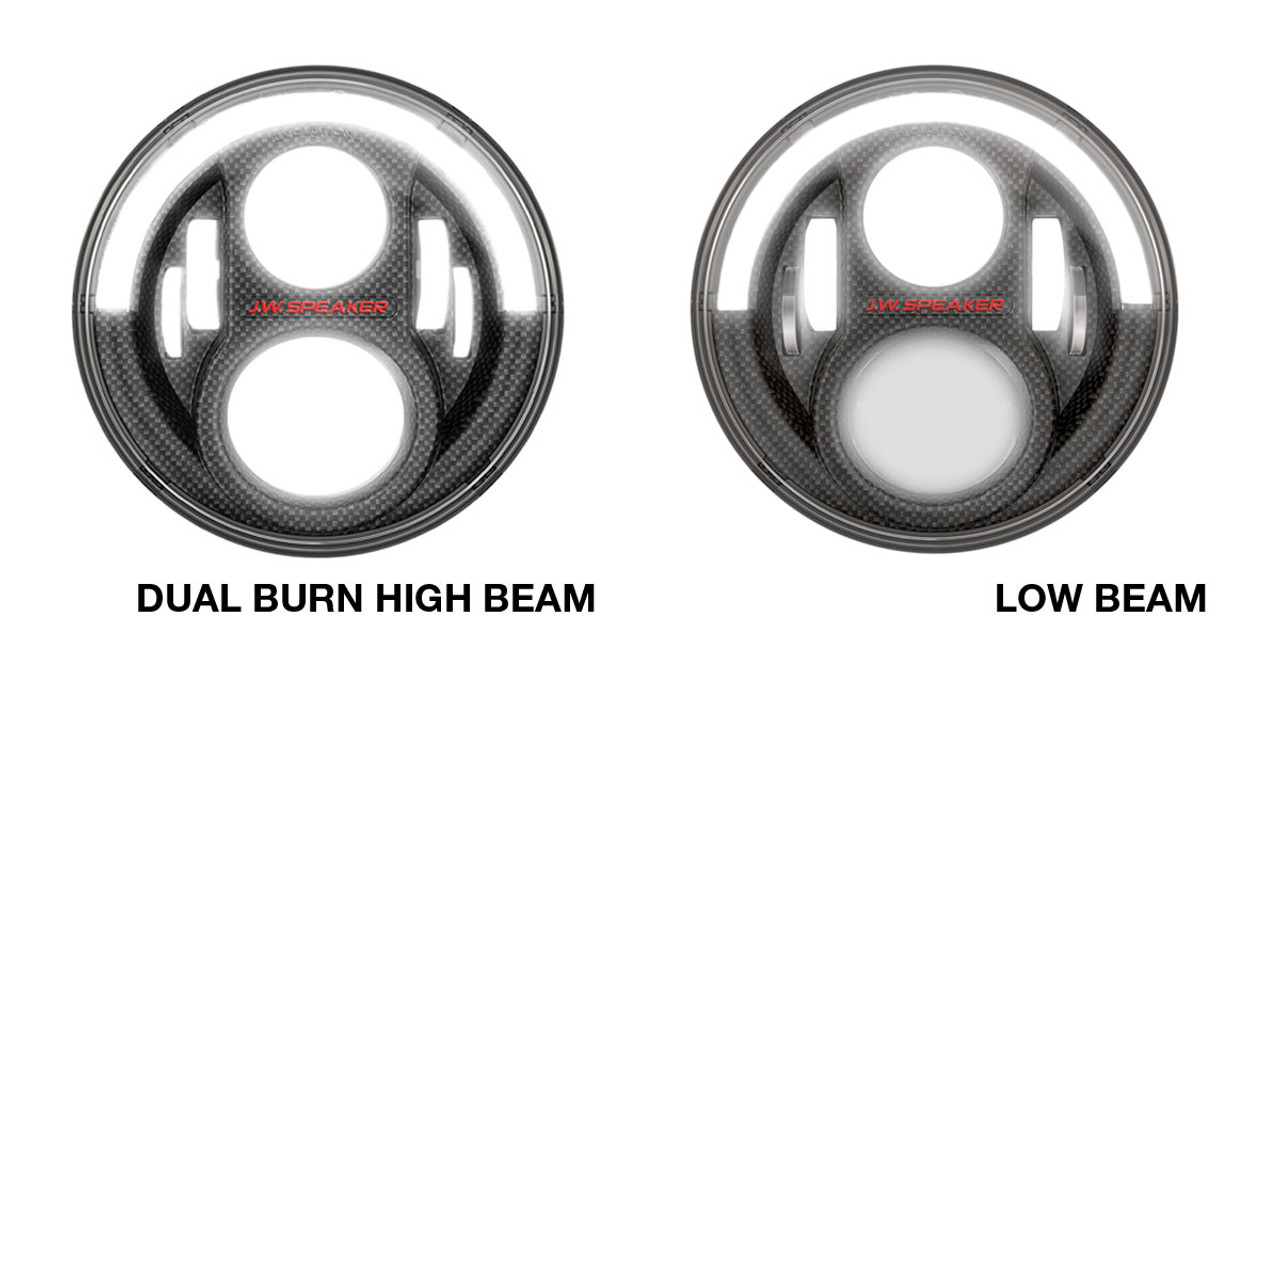 J.W. Speaker 12V DOT/ECE High & Low Beam Headlights (2 light kit) - Model 8700 Evolution J2